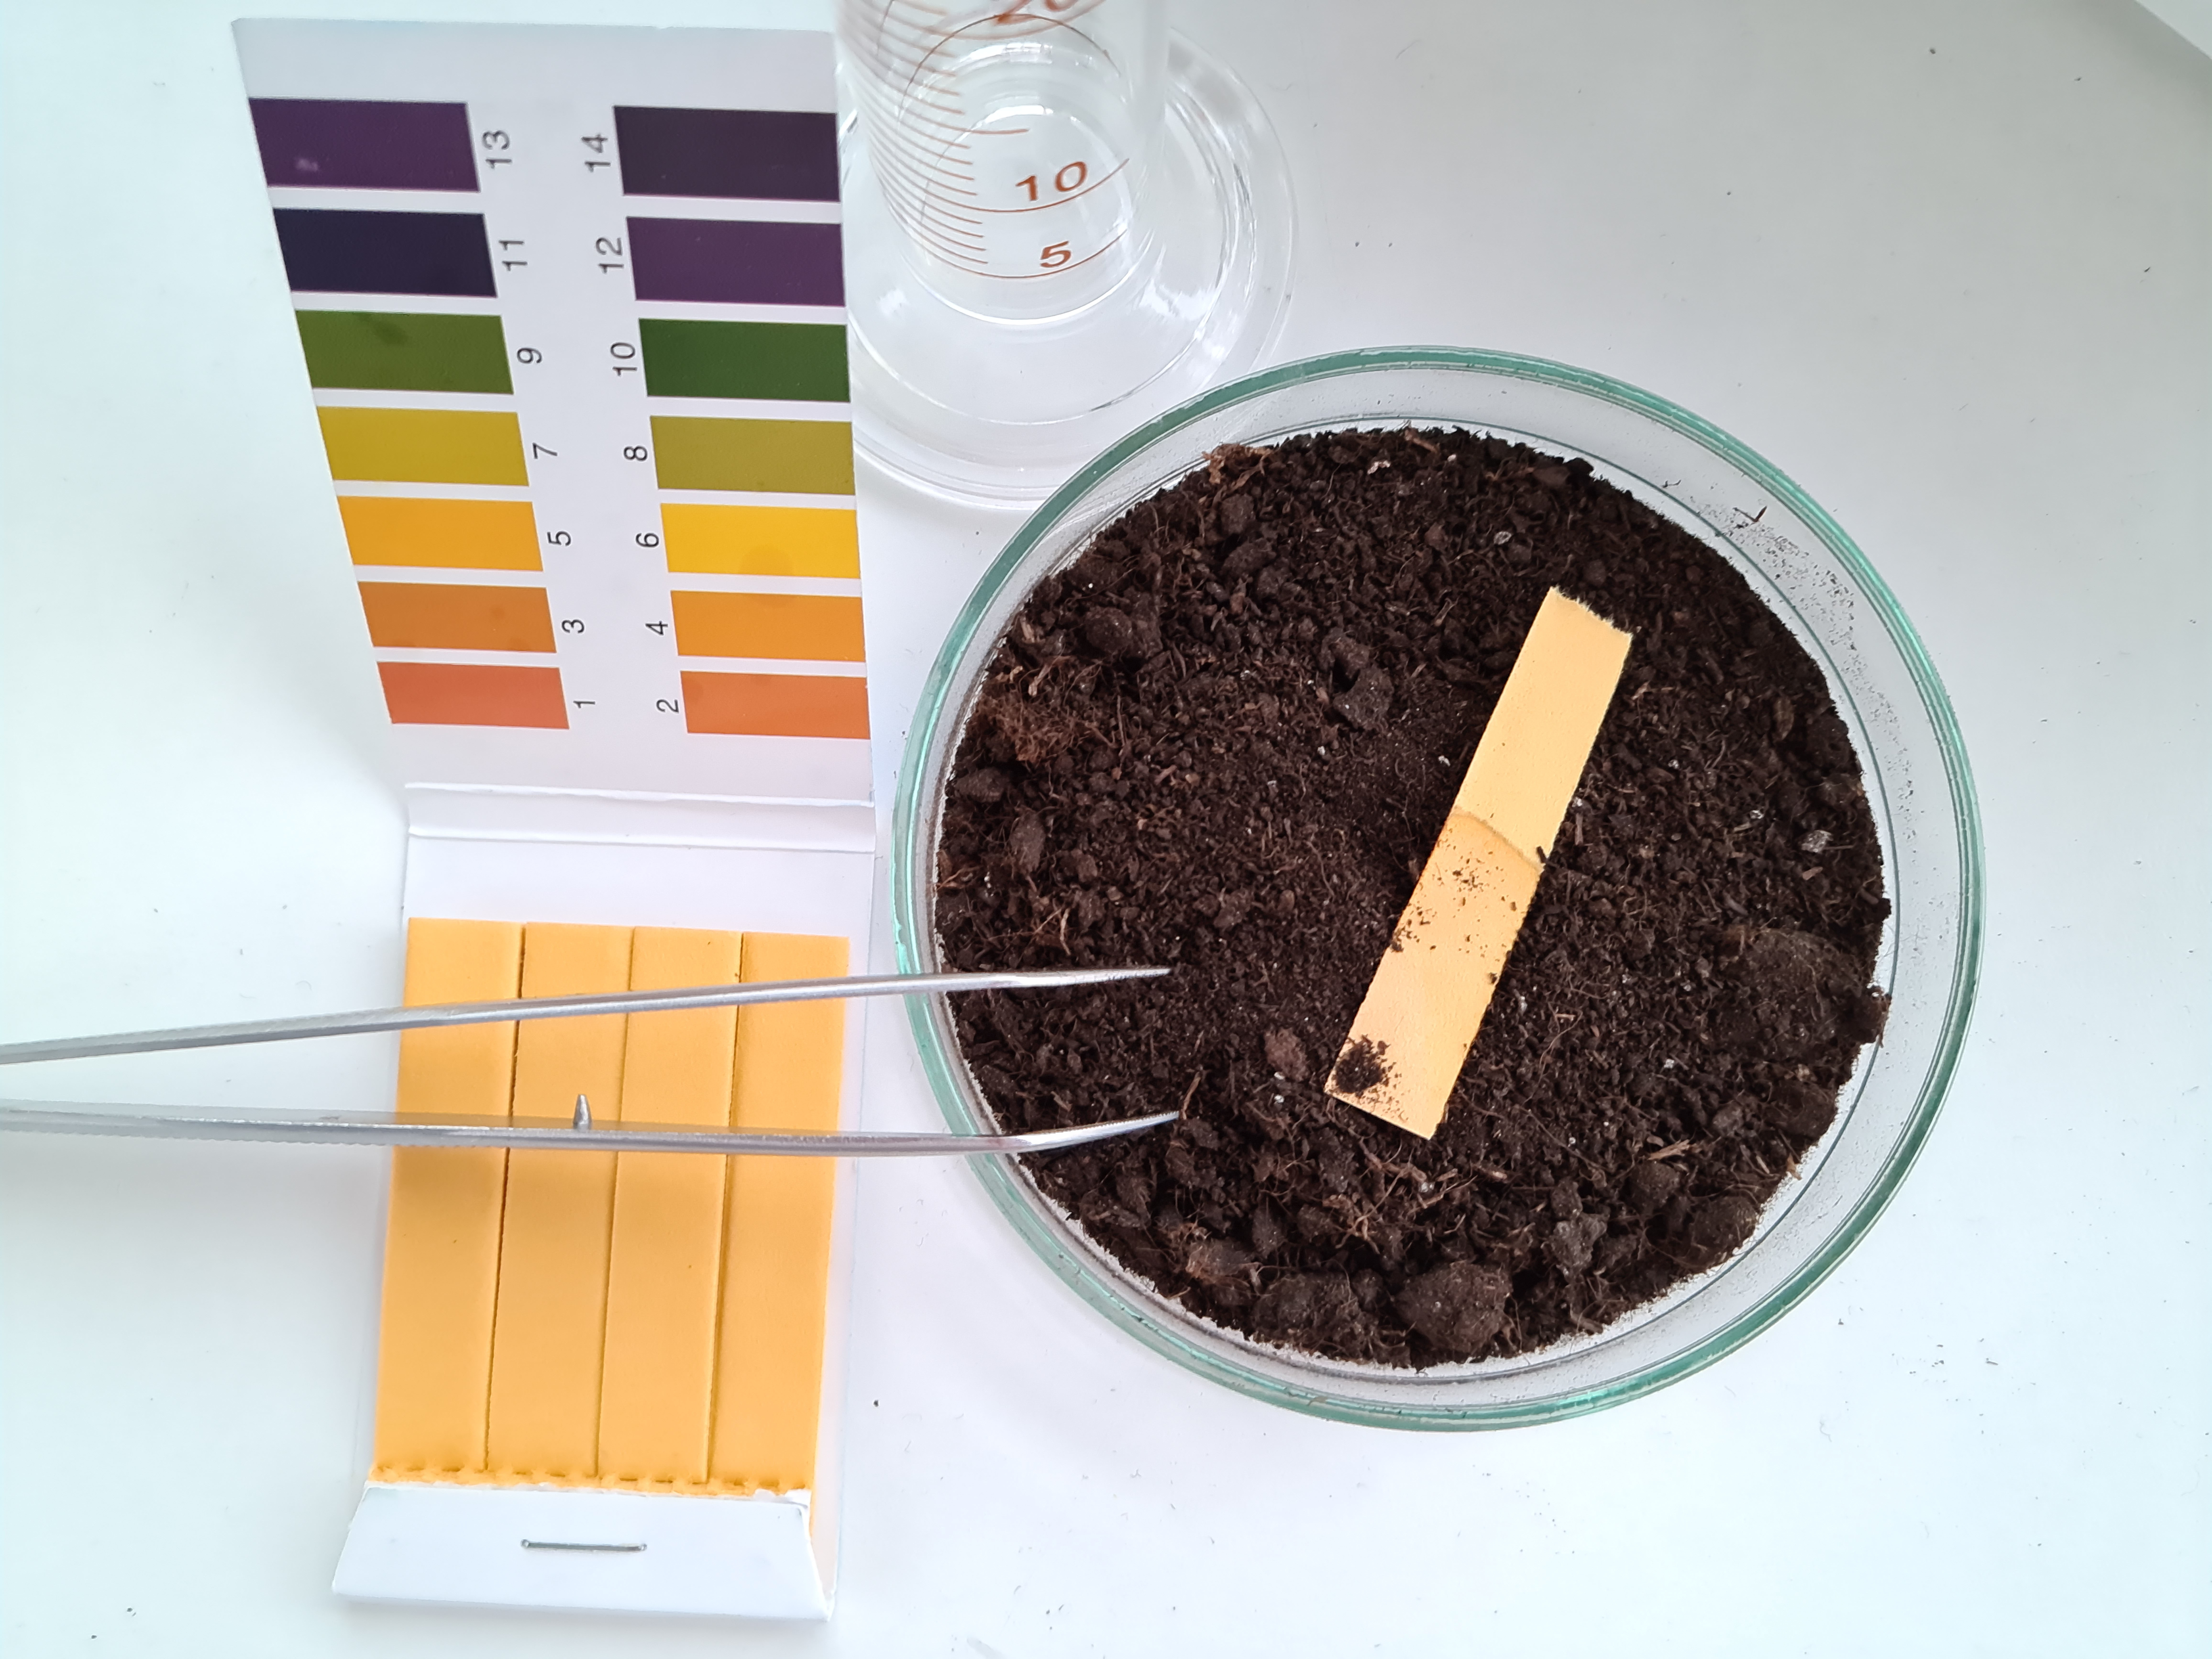 Testing soil ph